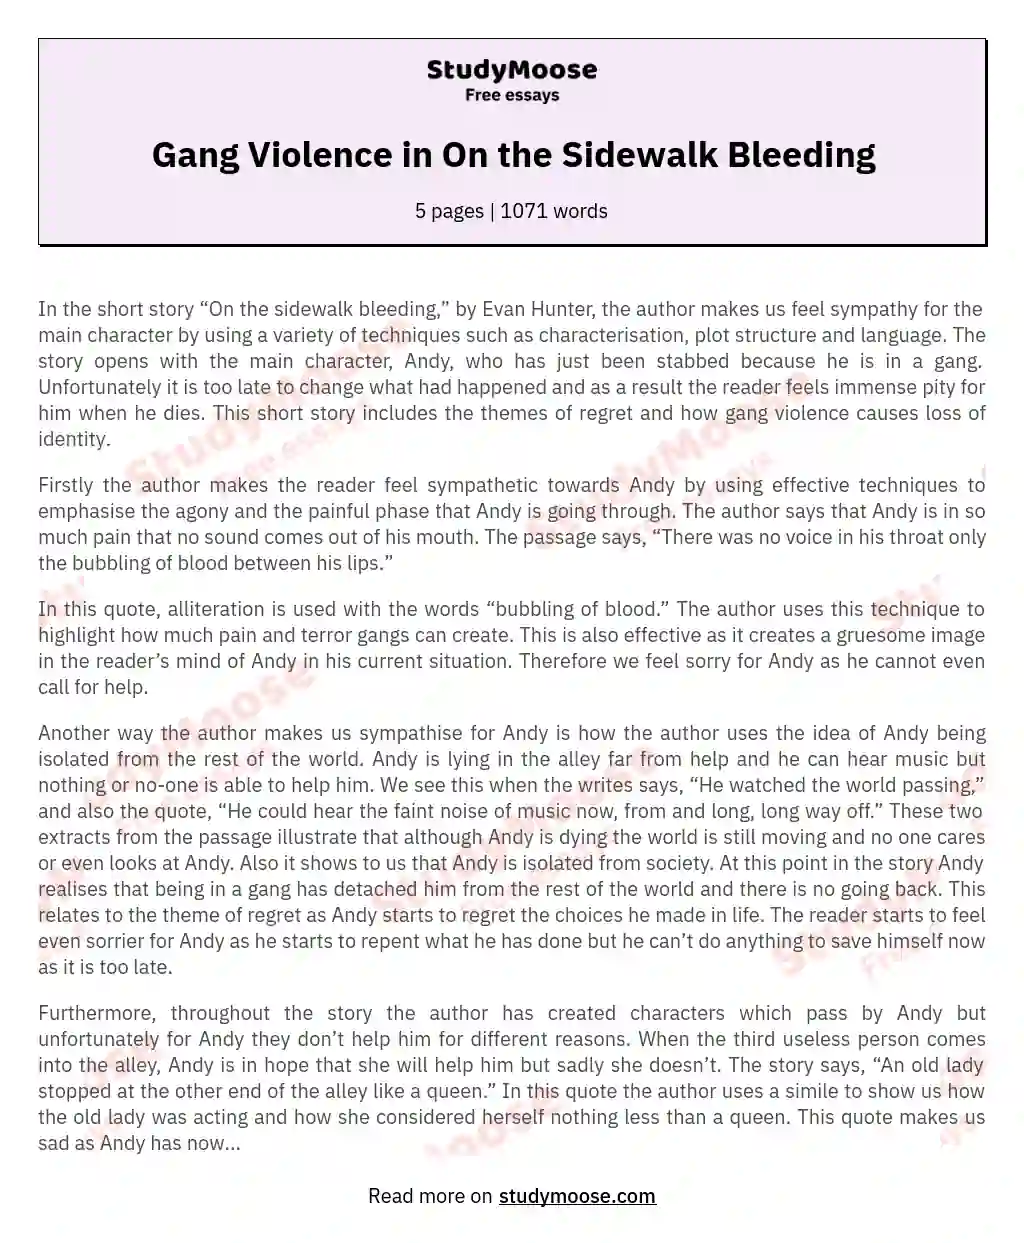 Gang Violence in On the Sidewalk Bleeding essay